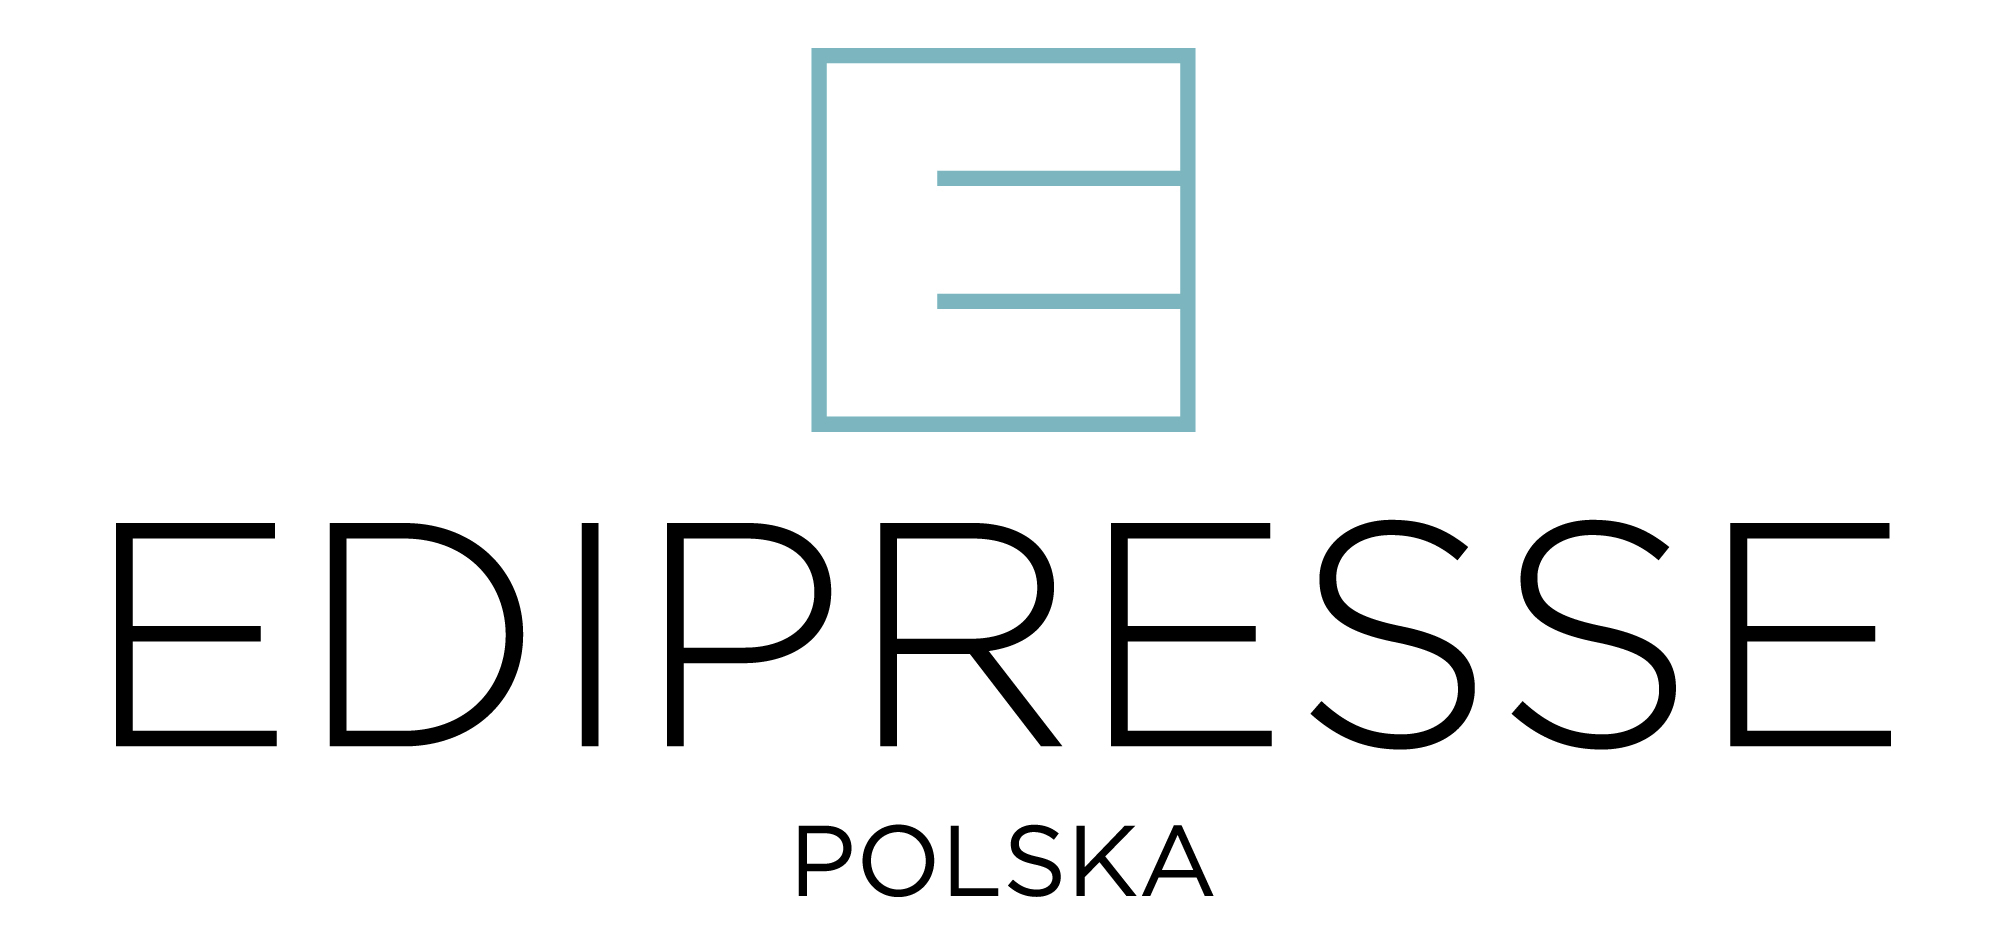 EDIPRESSEpolska2_logo_CMYK